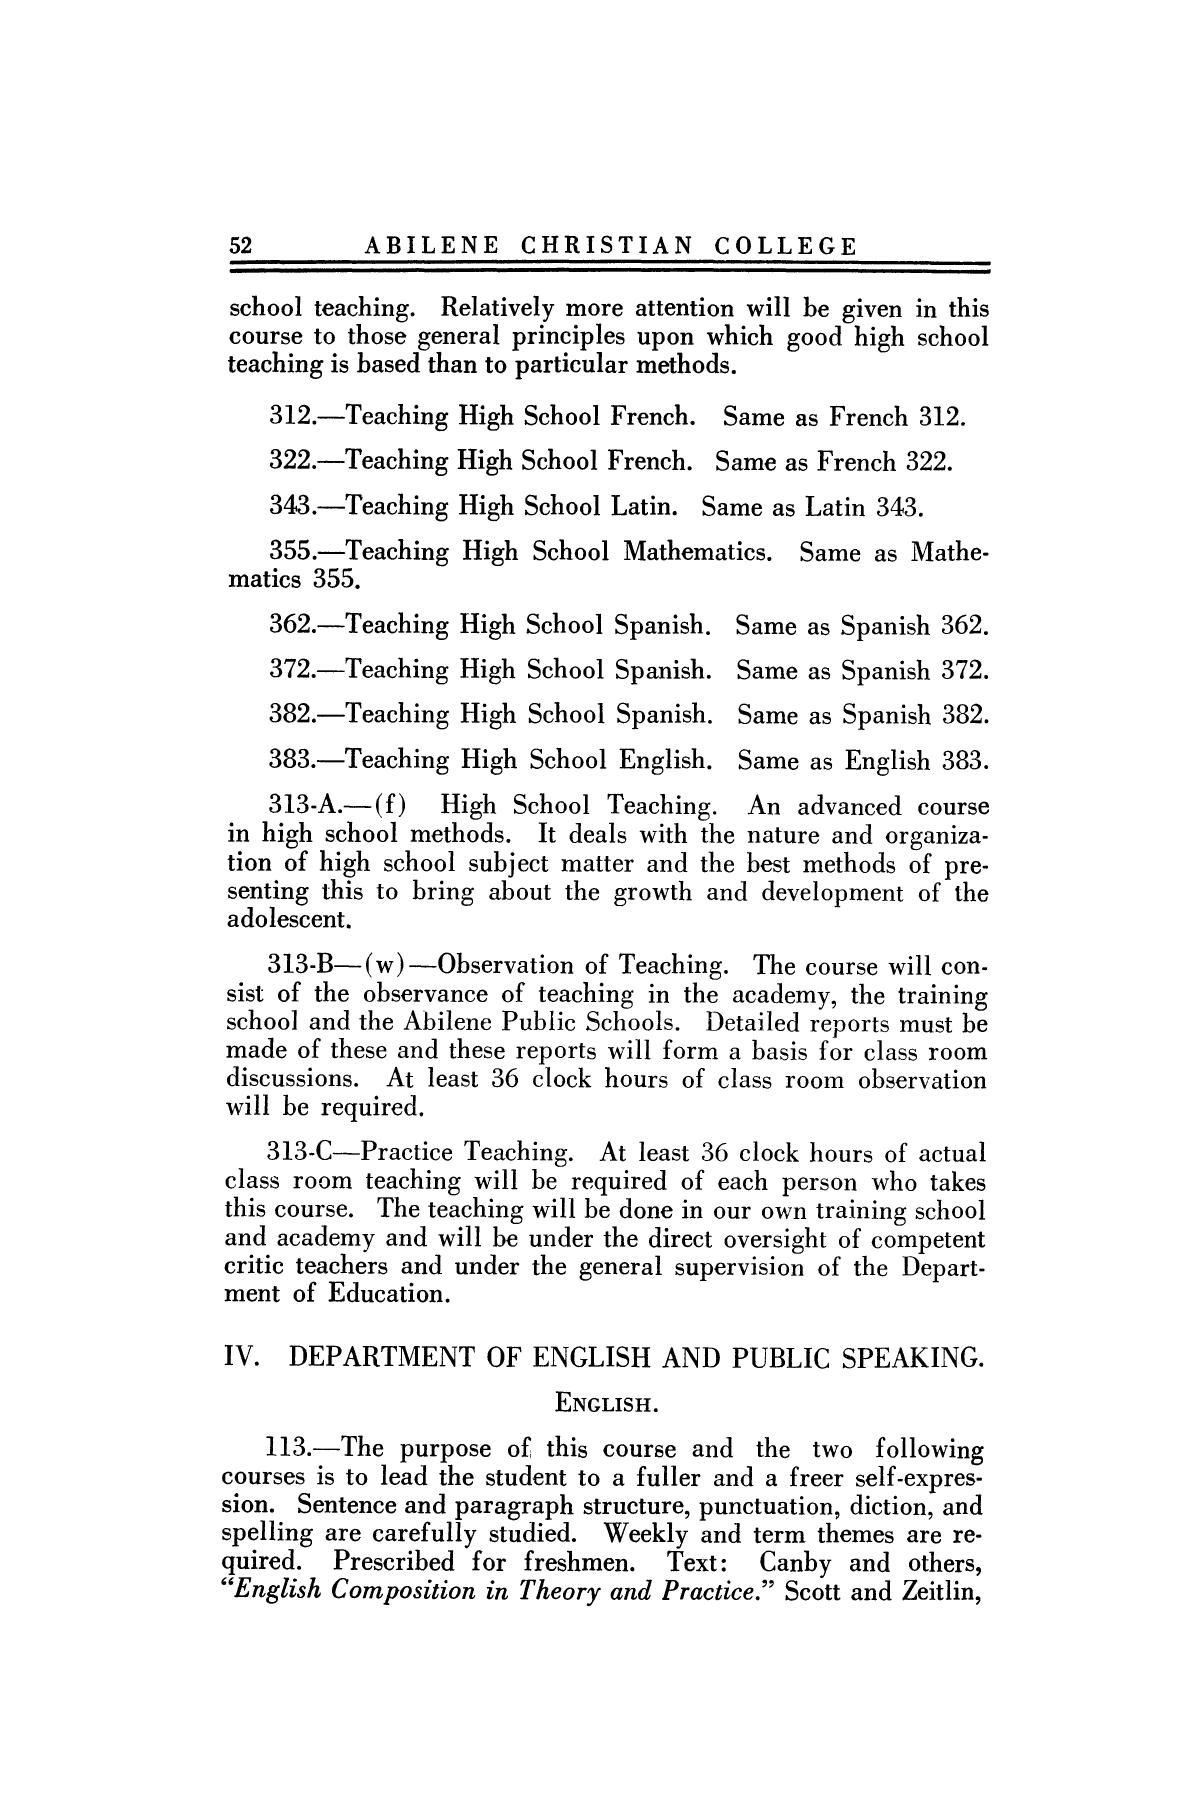 Catalog of Abilene Christian College, 1924-1925
                                                
                                                    52
                                                